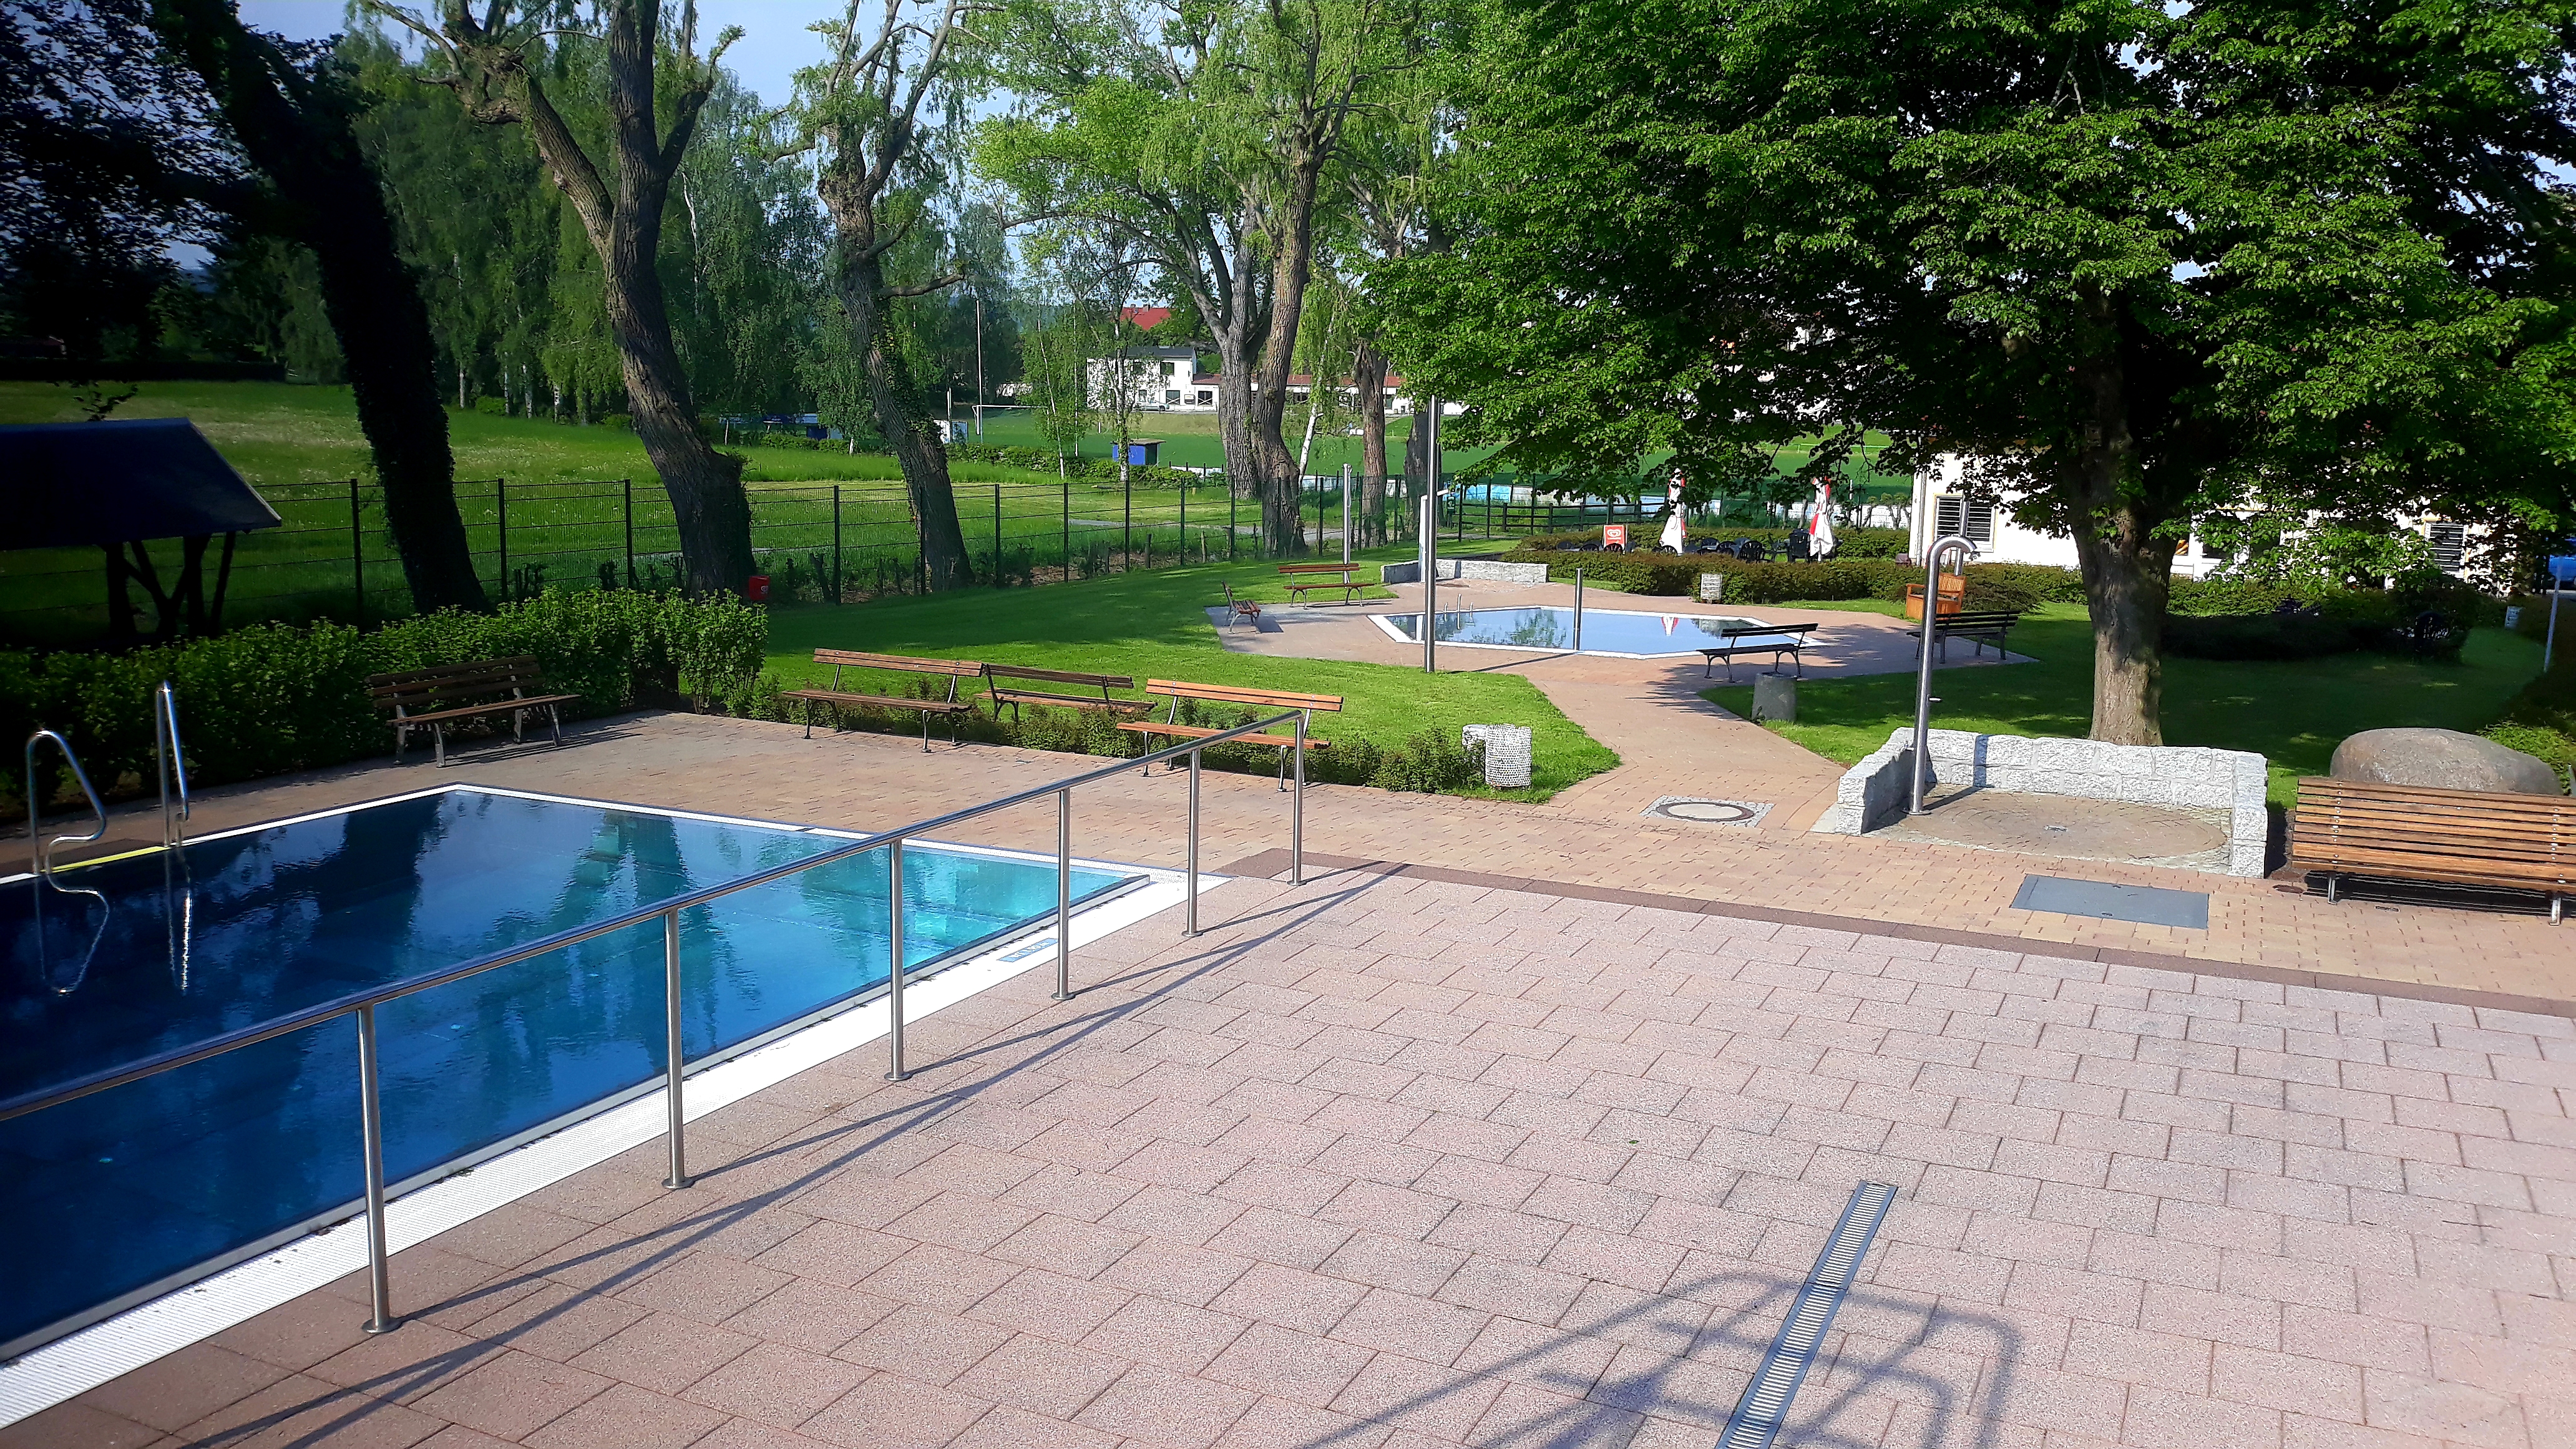 Das Bild zeigt Grünanlagen, im Vordergrund ist gepflasterter Untergrund und am linken Bildrand der Einstieg in ein Schwimmbecken zu sehen.